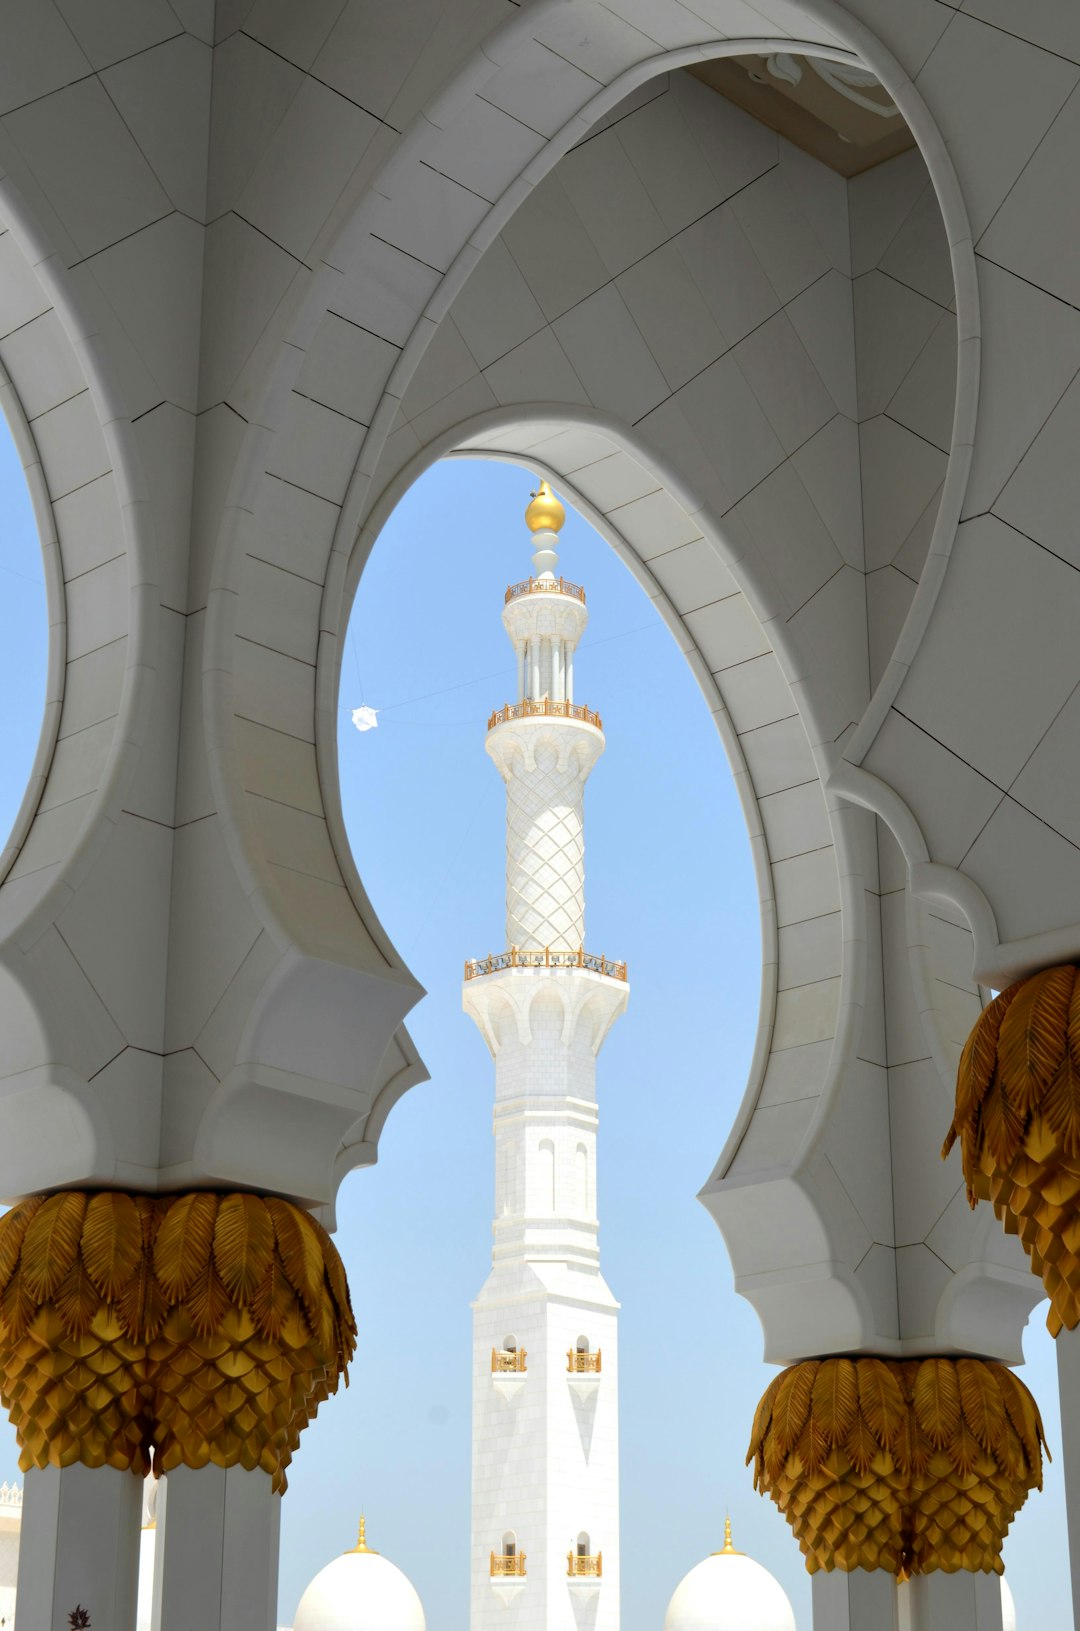 Place of worship photo spot Abu Dhabi Abu Dhabi - United Arab Emirates